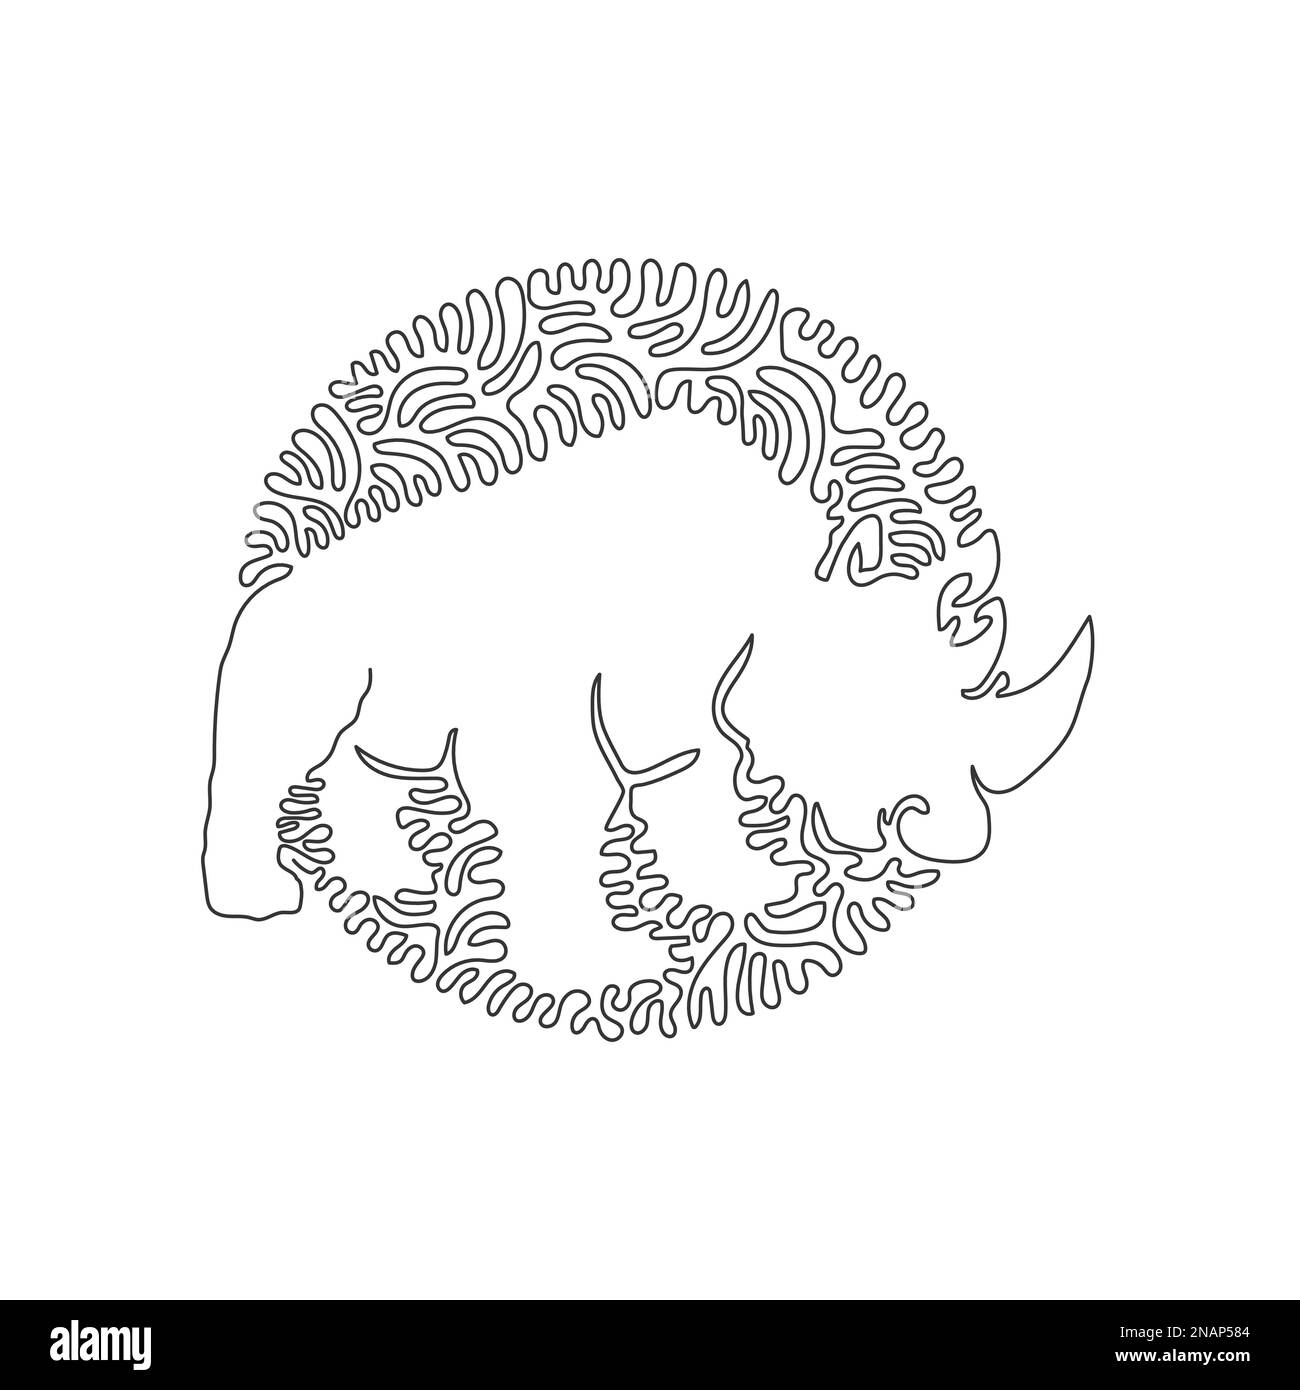 Eine einzelne, geschwungene Linienzeichnung exotischer Hörner Nashörner abstrakte Kunst. Durchgehende Linienzeichnung des Entwurfsvektors Darstellung des Nashorn-Körpers und des großen Kopfes Stock Vektor